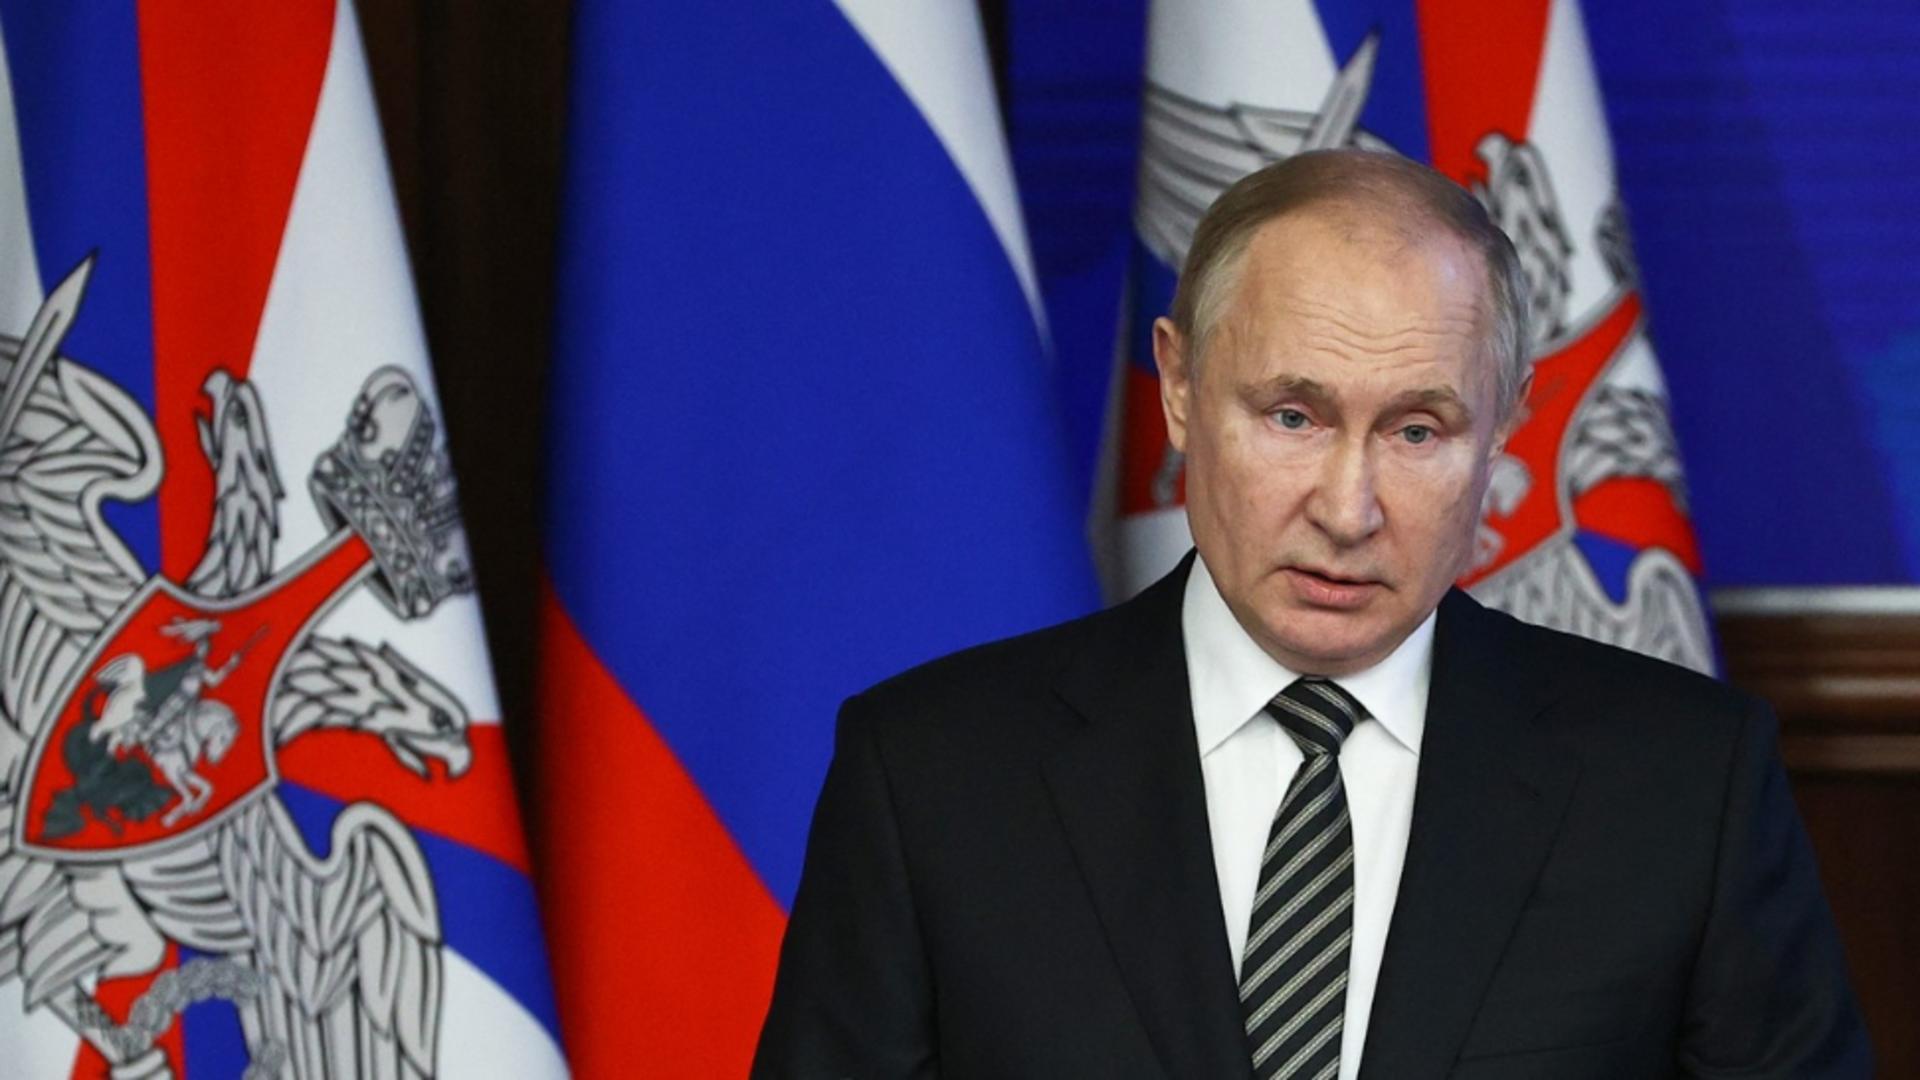 Lovitura la care nu se aștepta Putin - trădătorii se înmulțesc / Foto: Profi Media